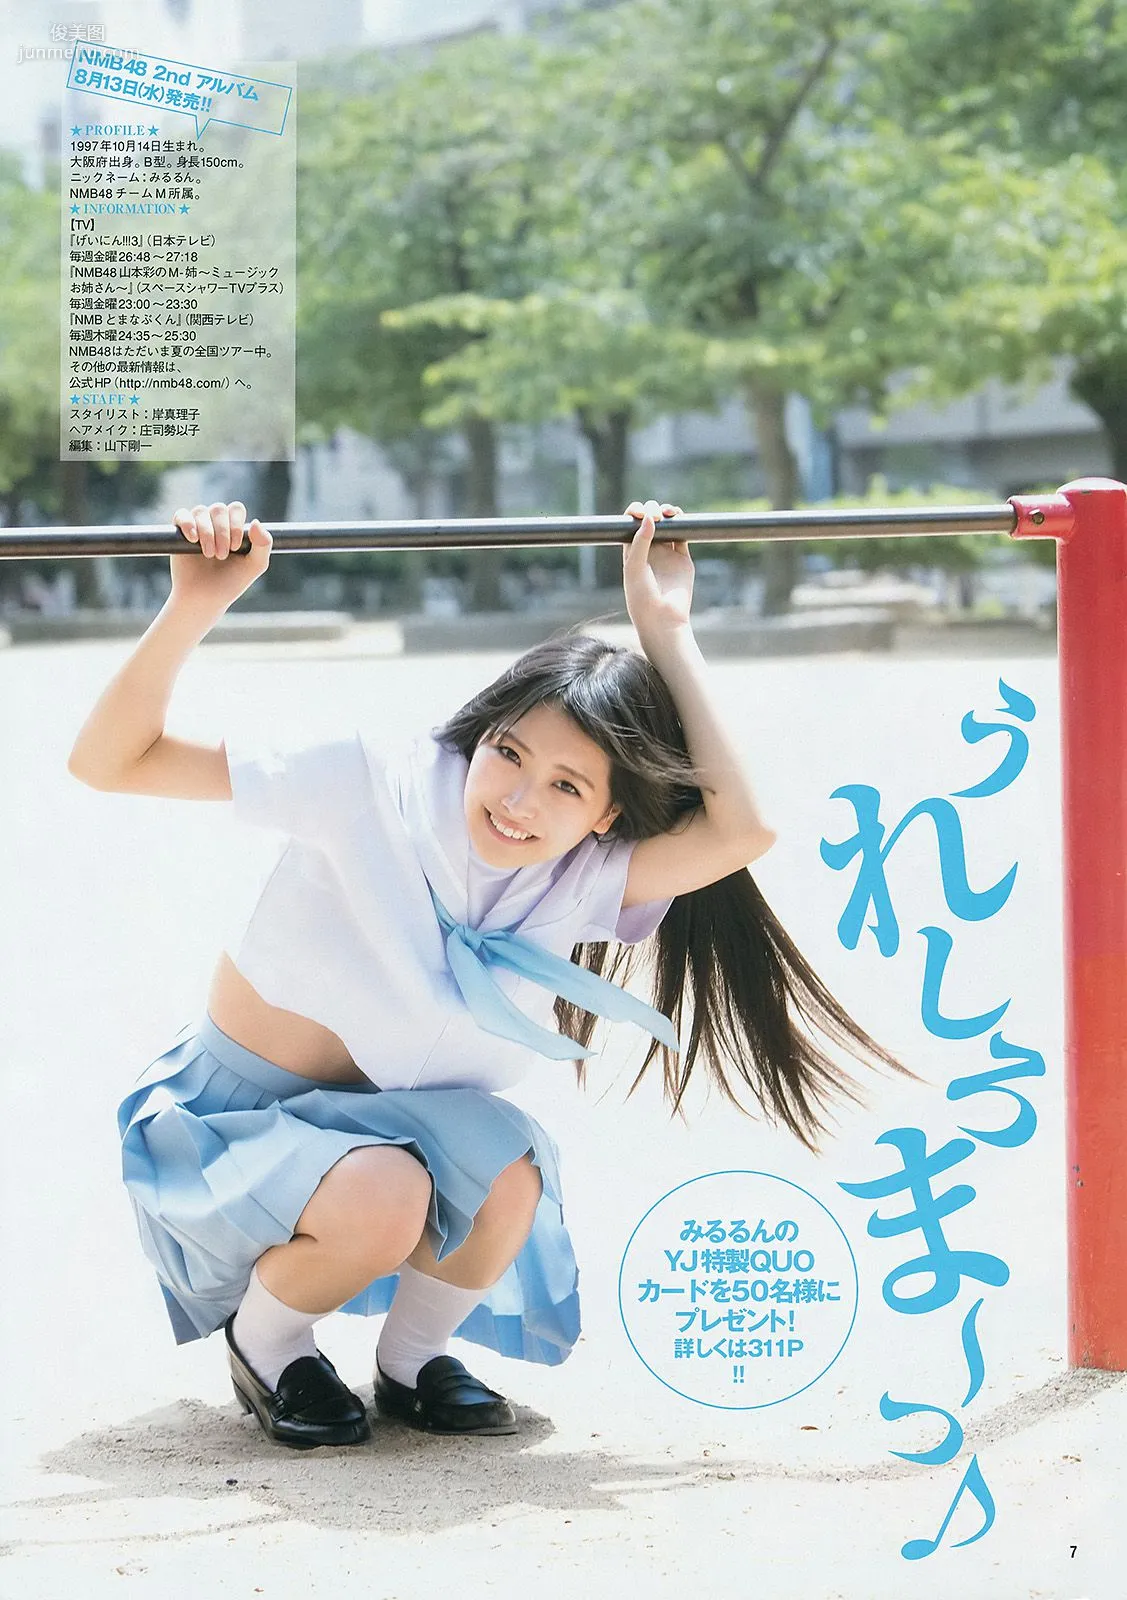 白間美瑠 キャラビア2.5 優希美青 [Weekly Young Jump] 2014年No.33 写真杂志8